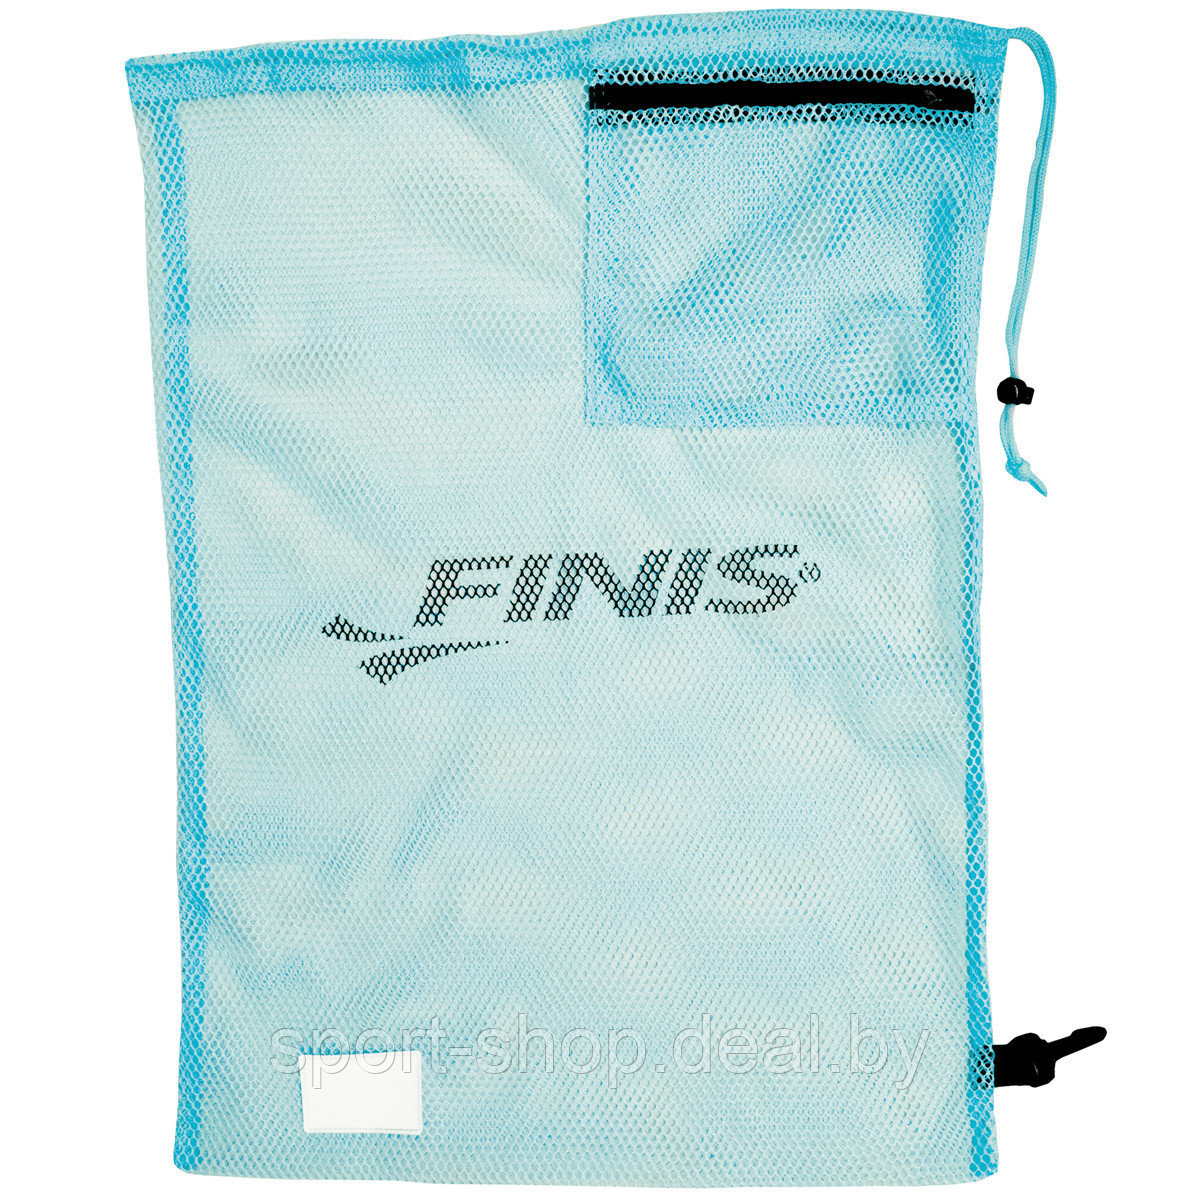 Сетка для инвентаря Mesh Gear Bag Sky Blue 1.25.030.203,сумка для инвентаря,сумка FINIS,  сумка мешок